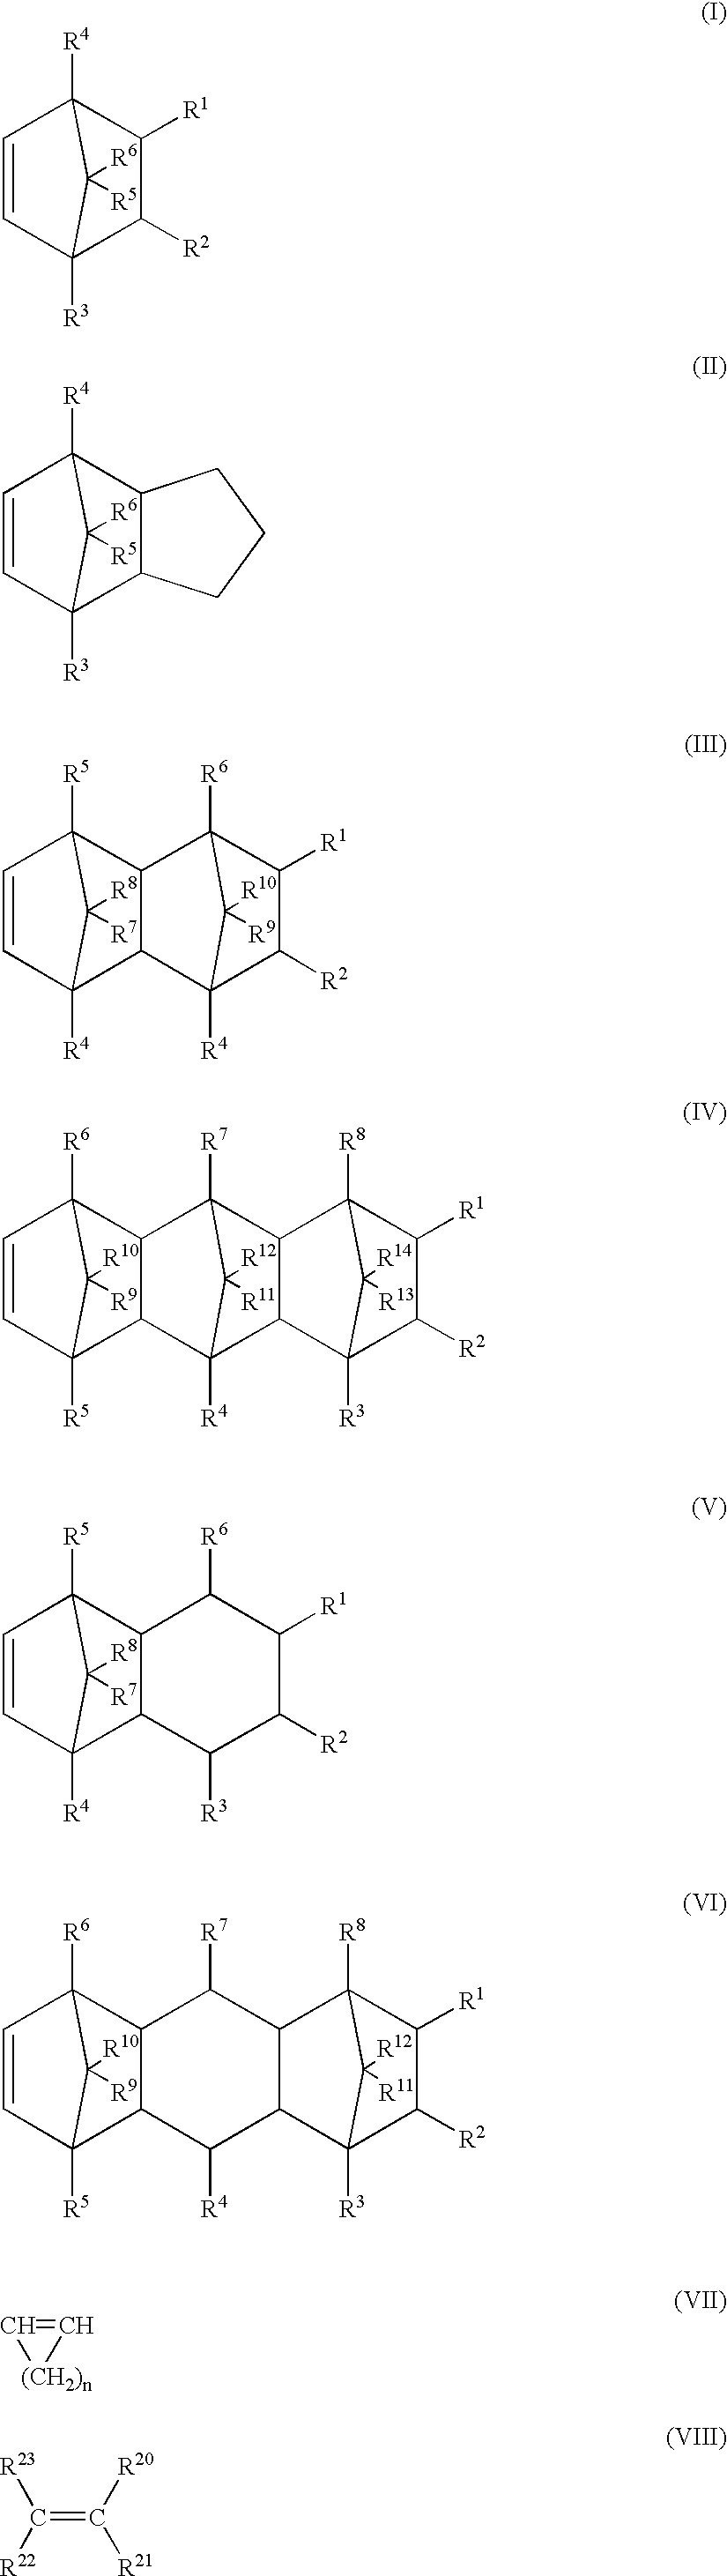 Noncrystalline polyolefin resin composition